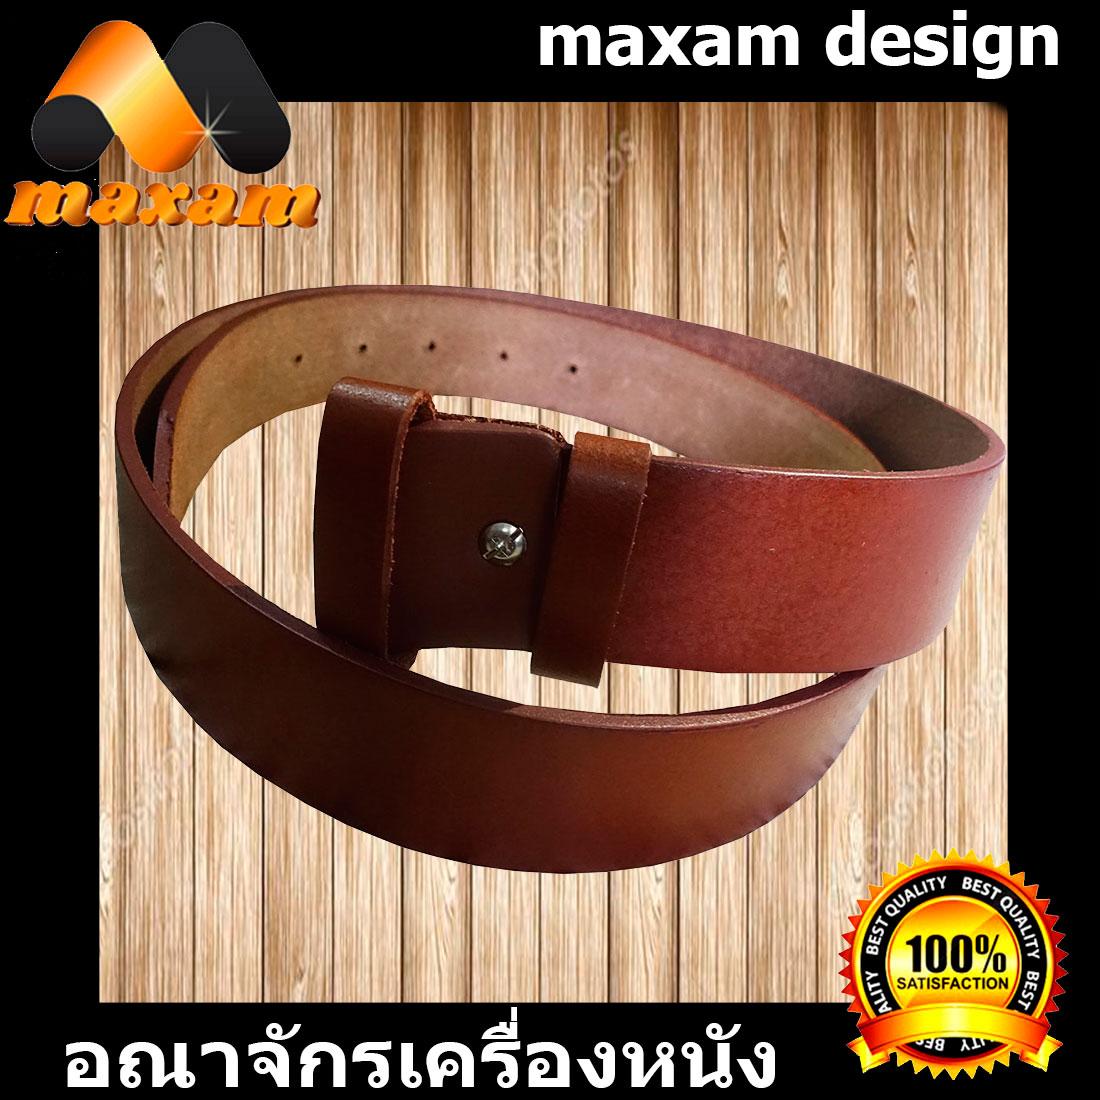 maxam design  ต้องใช้หนังแท้สิ! Genuine Cowhide Leather ใช้ของแท้ ใช้ทน ใช้นานใด้หลายปี นิศิตนักศึกษาชอบใช้  สายเข็มขัดหนังวัวอย่างแท้ๆ ยาวตลอดเส้น 44 นิ้ว เหมาะสำหรับท่านที่มีเอว  36-37-38-39 นิ้ว สีน้ำตาล  maxam design